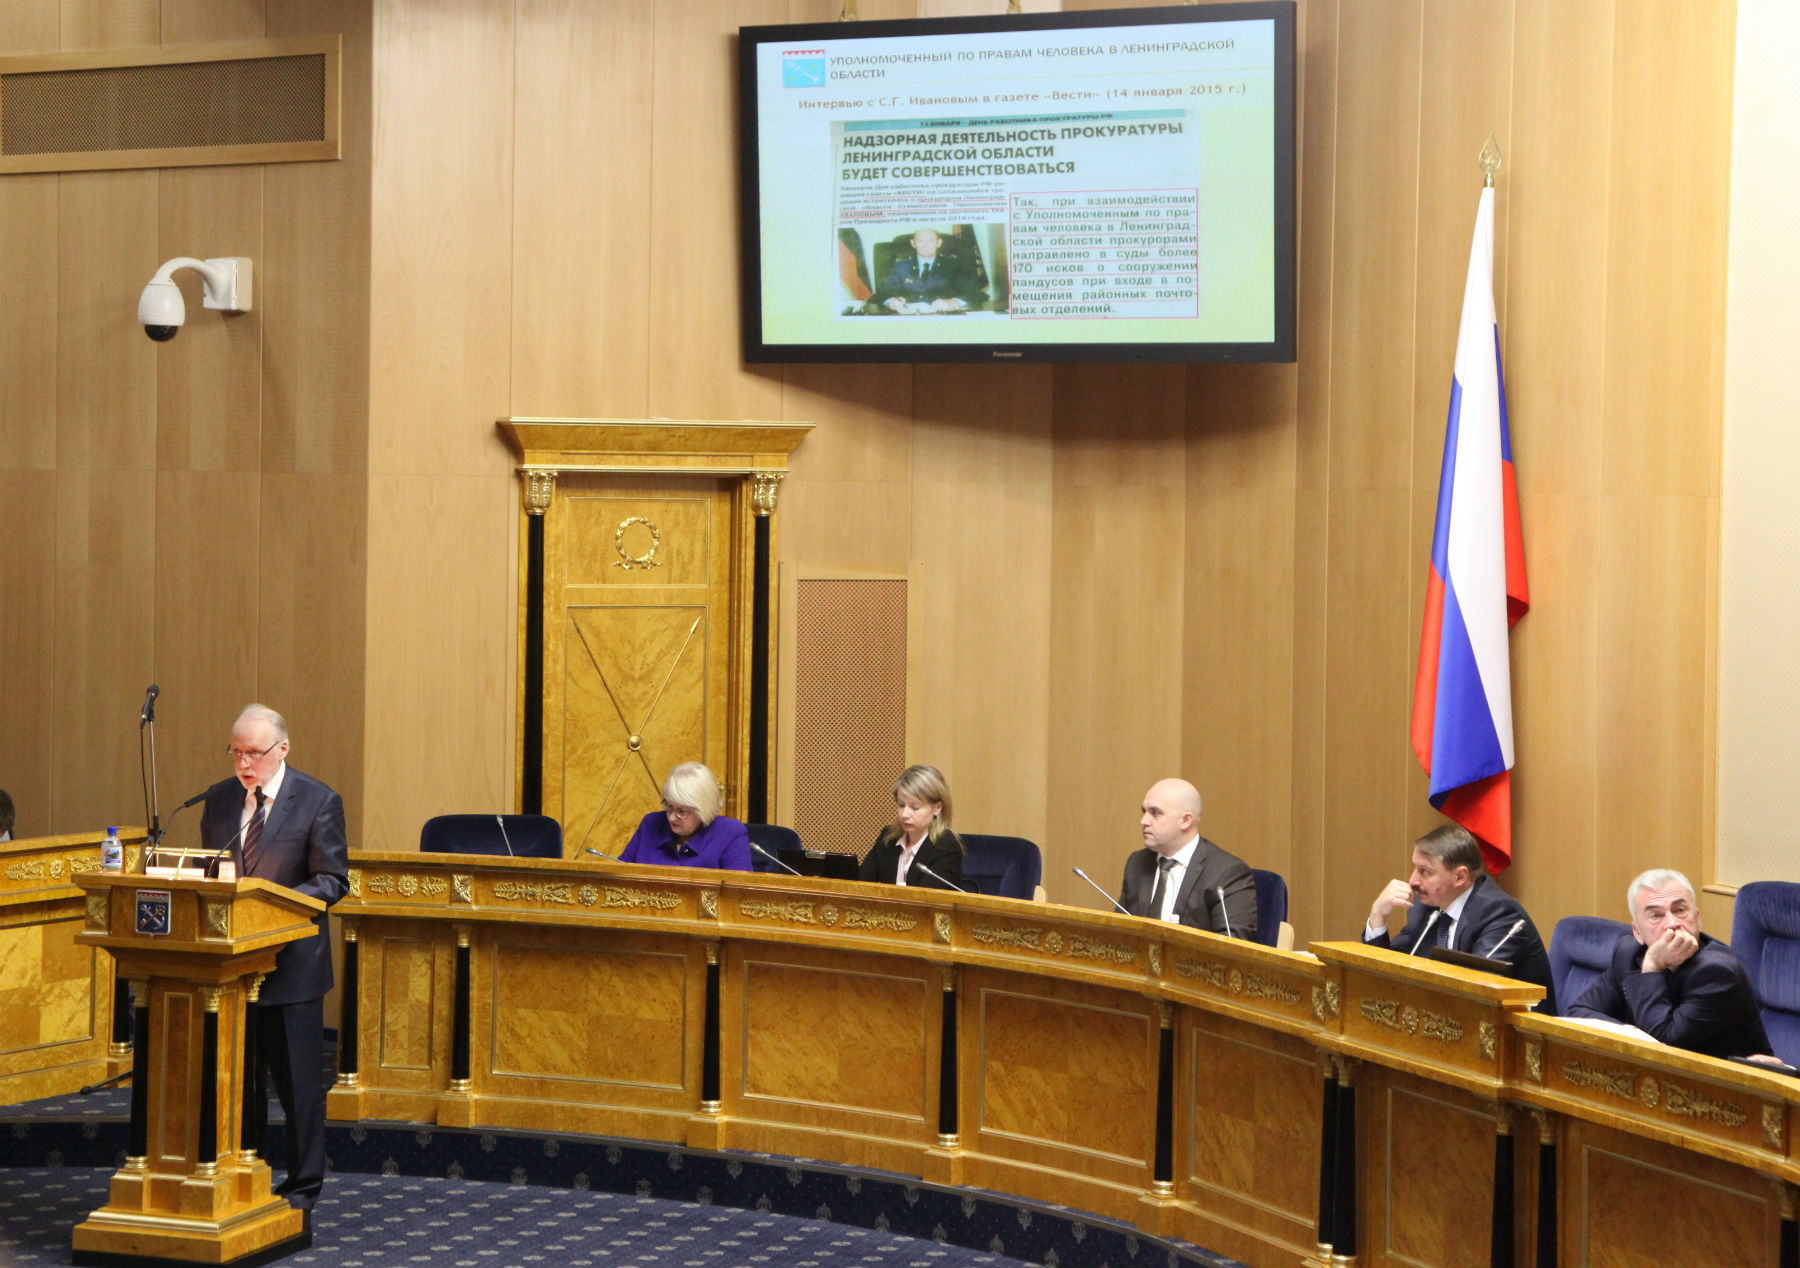 Сергей Шабанов выступил с докладом о законодательной инициативе перед областными депутатами